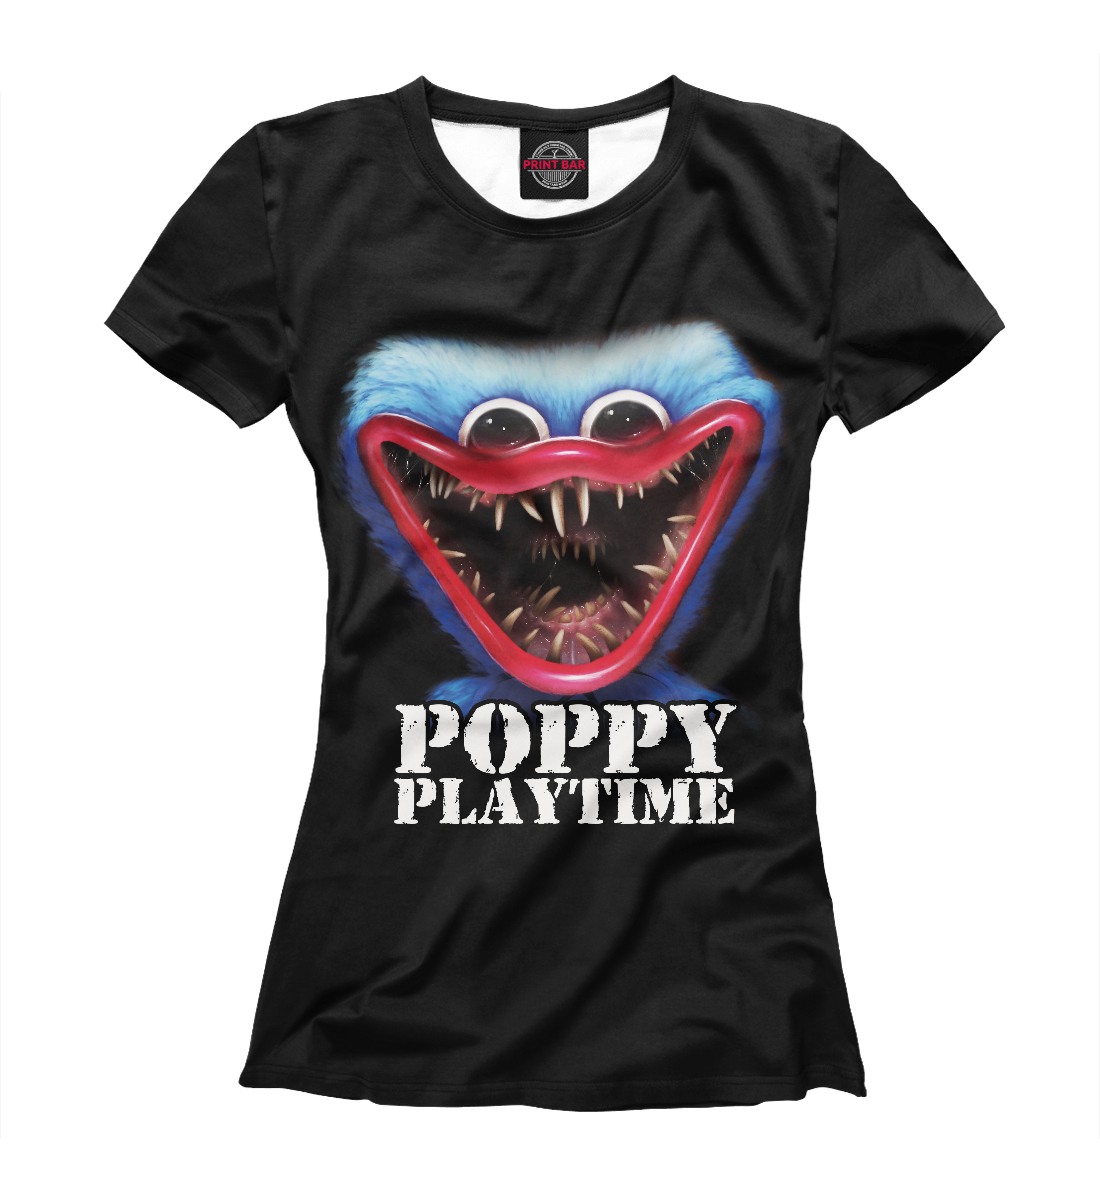 Футболка Poppy Playtime Хагги Вагги для девочек, артикул: PPE-722142-fut-1mp